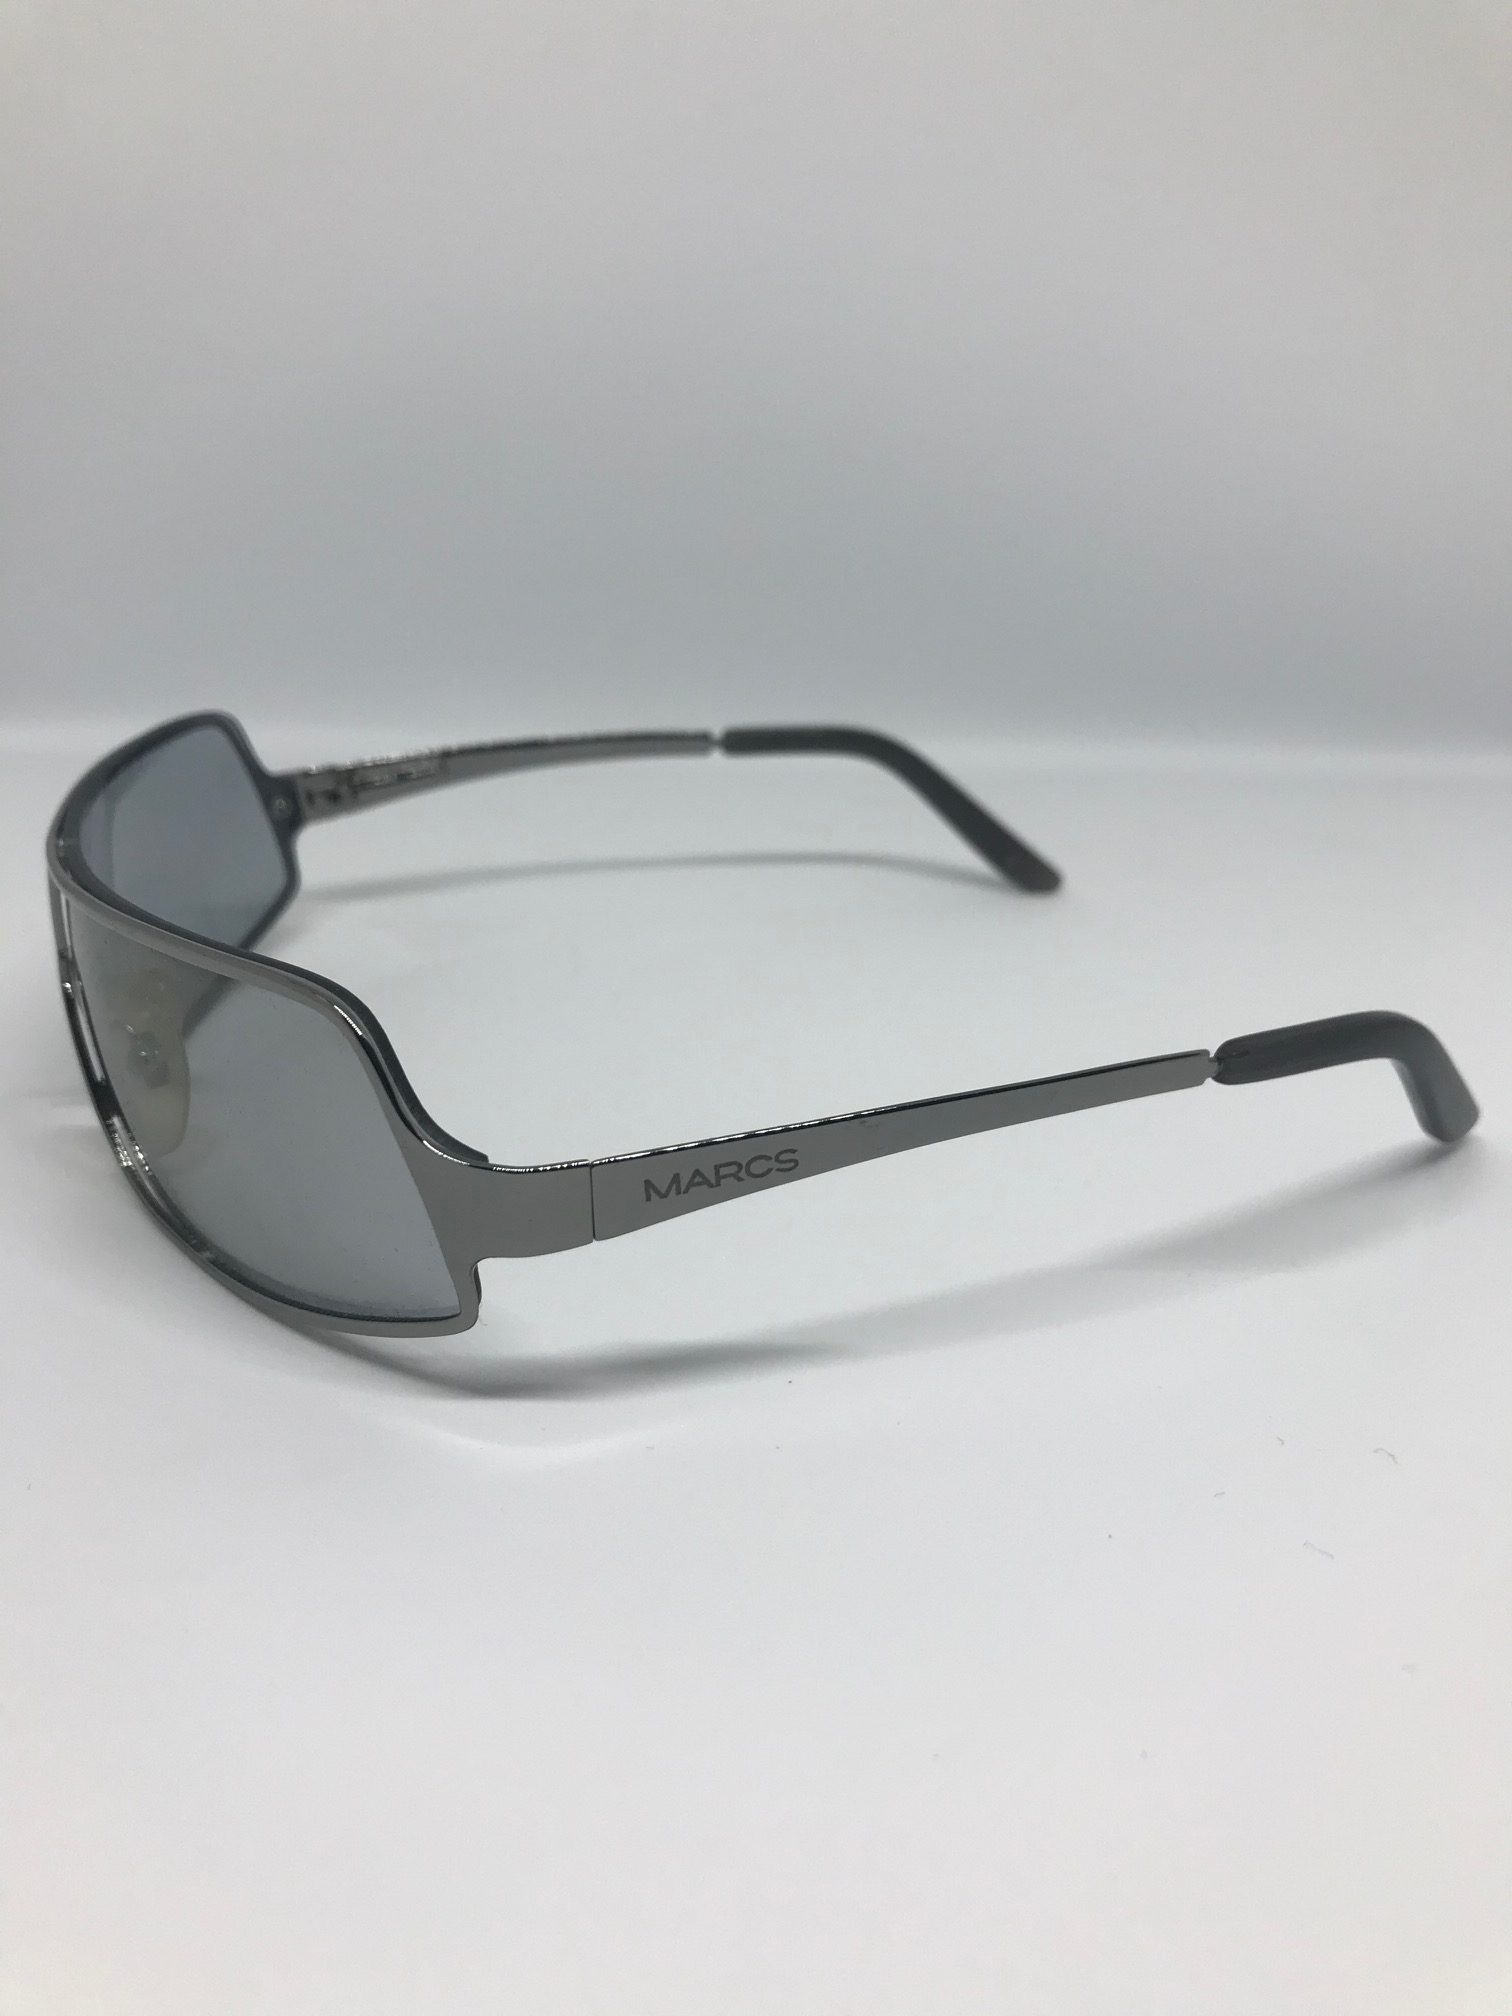 Marcs Melrose Sunglasses – framesXchange